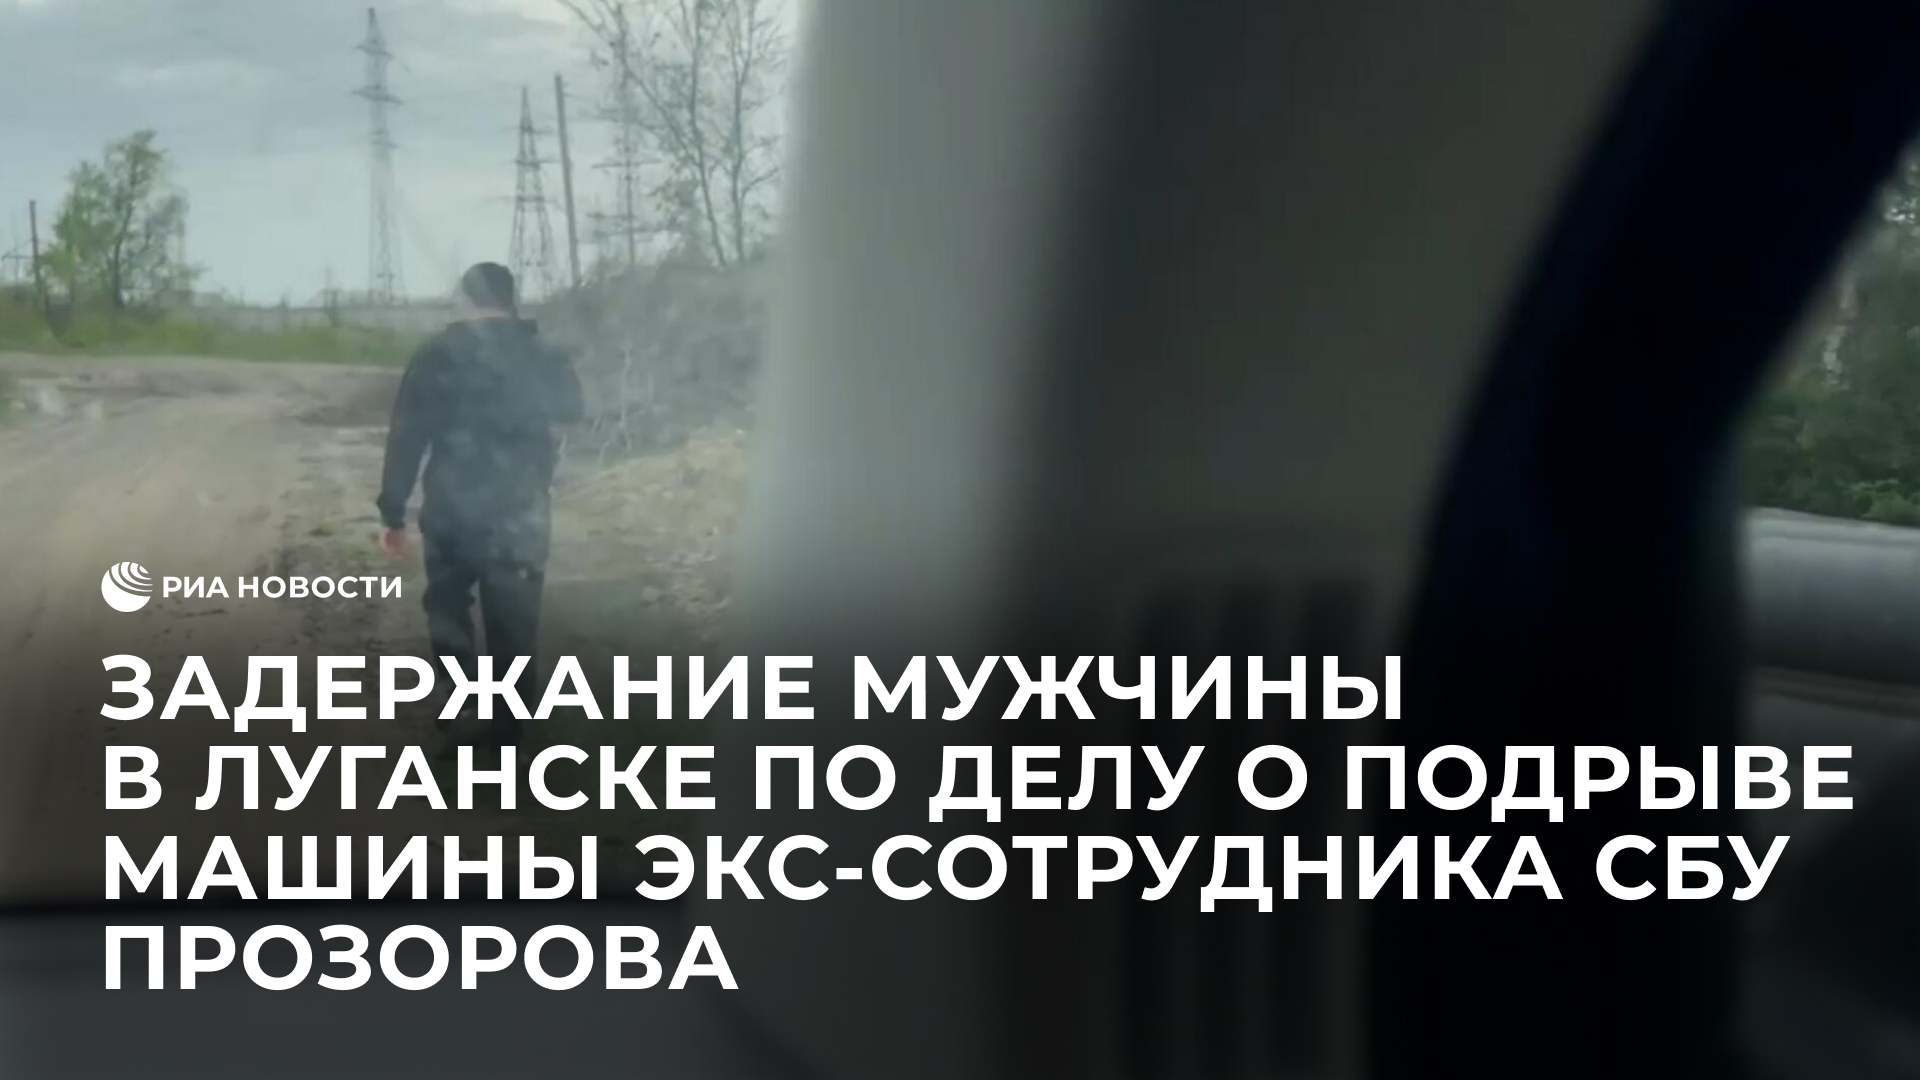 Задержание мужчины в Луганске по делу о подрыве машины экс-сотрудника СБУ Прозорова